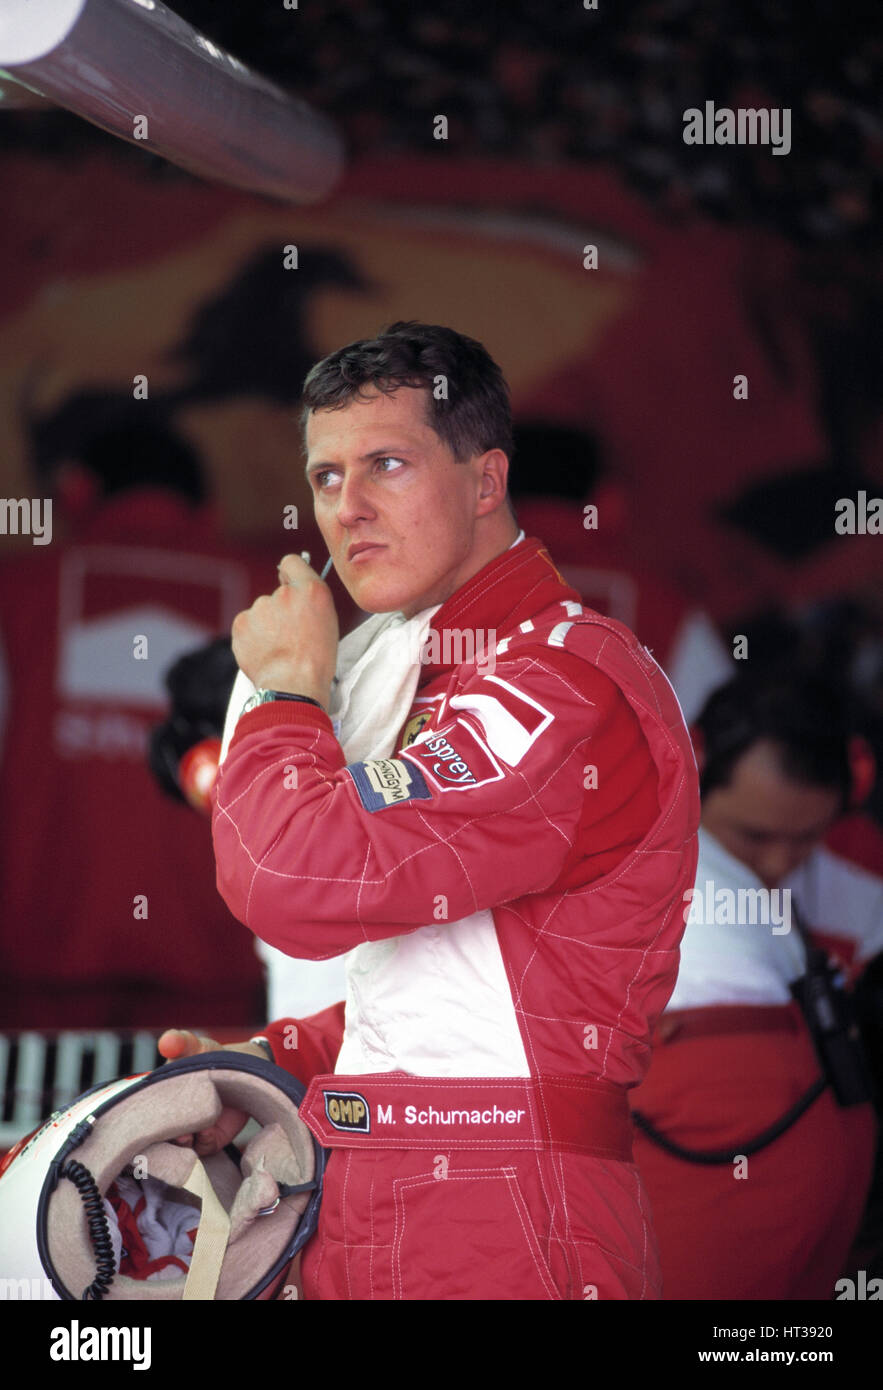 Michael Schumacher. Artist: Unknown. Stock Photo